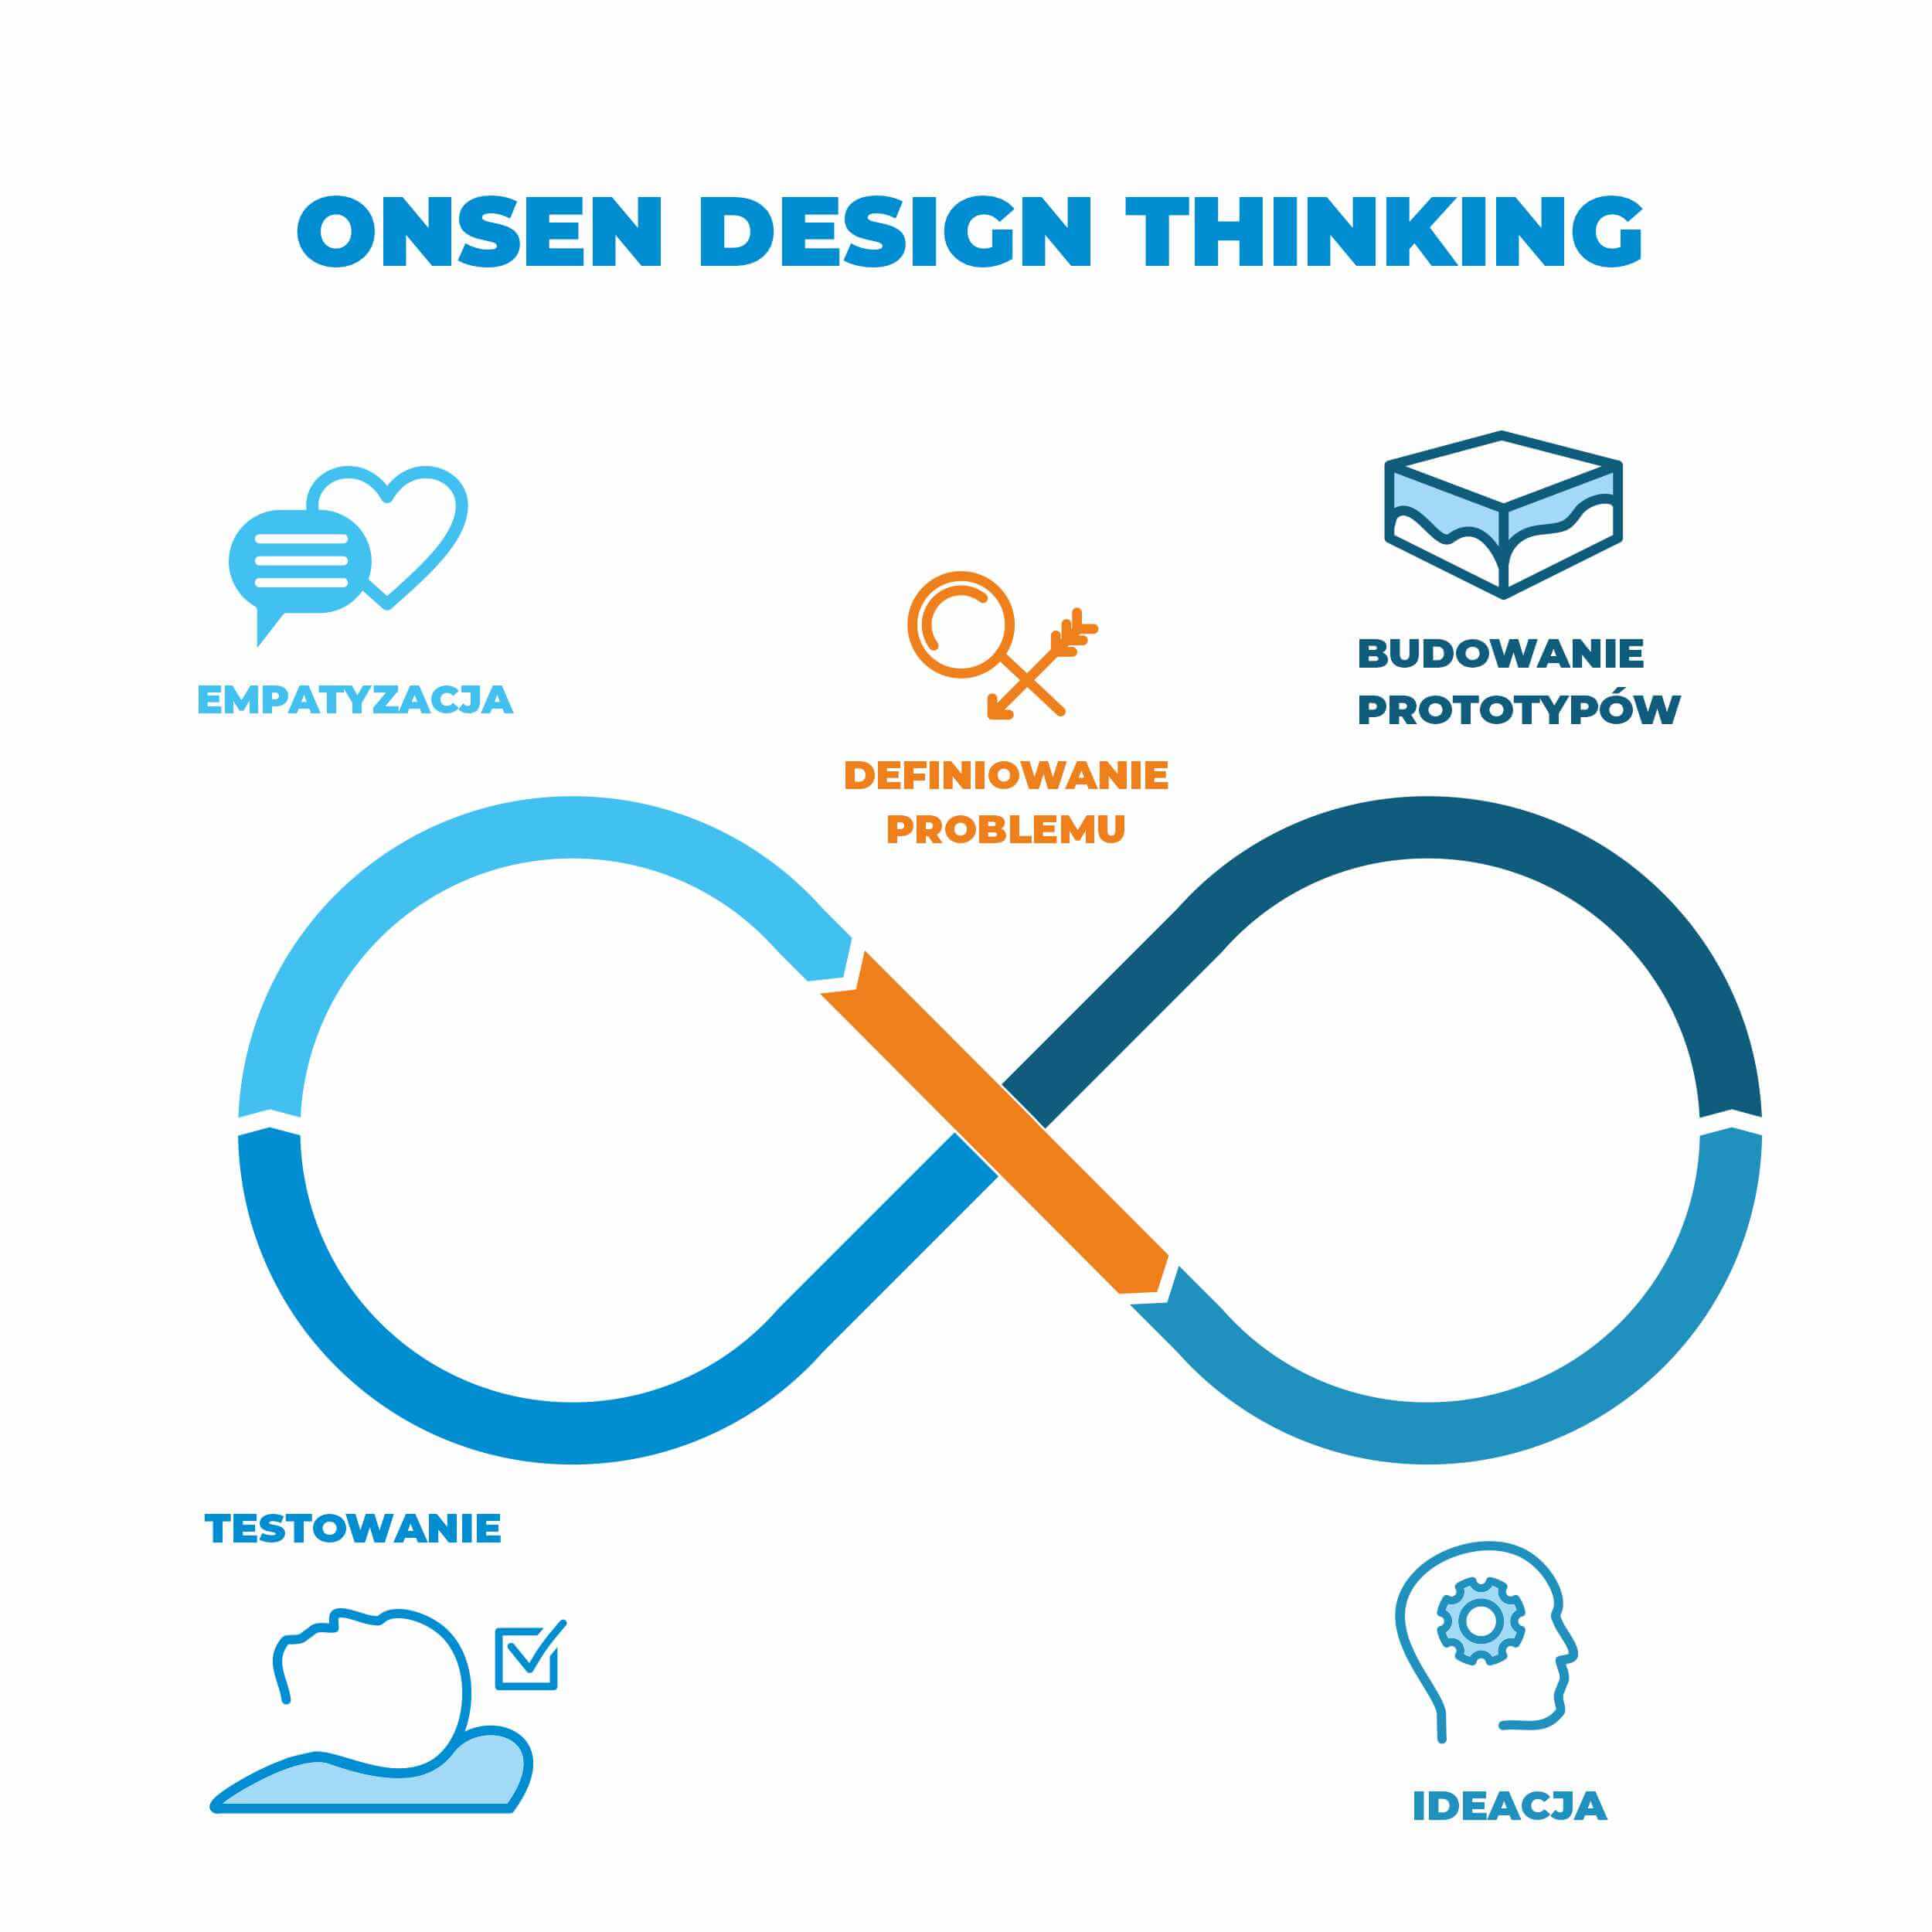 Design thinking, zaczynaj od dlaczego, etapy projektowania, empatyzacja, definicja, ideacja, prototypowanie, testowanie, wdrożenie